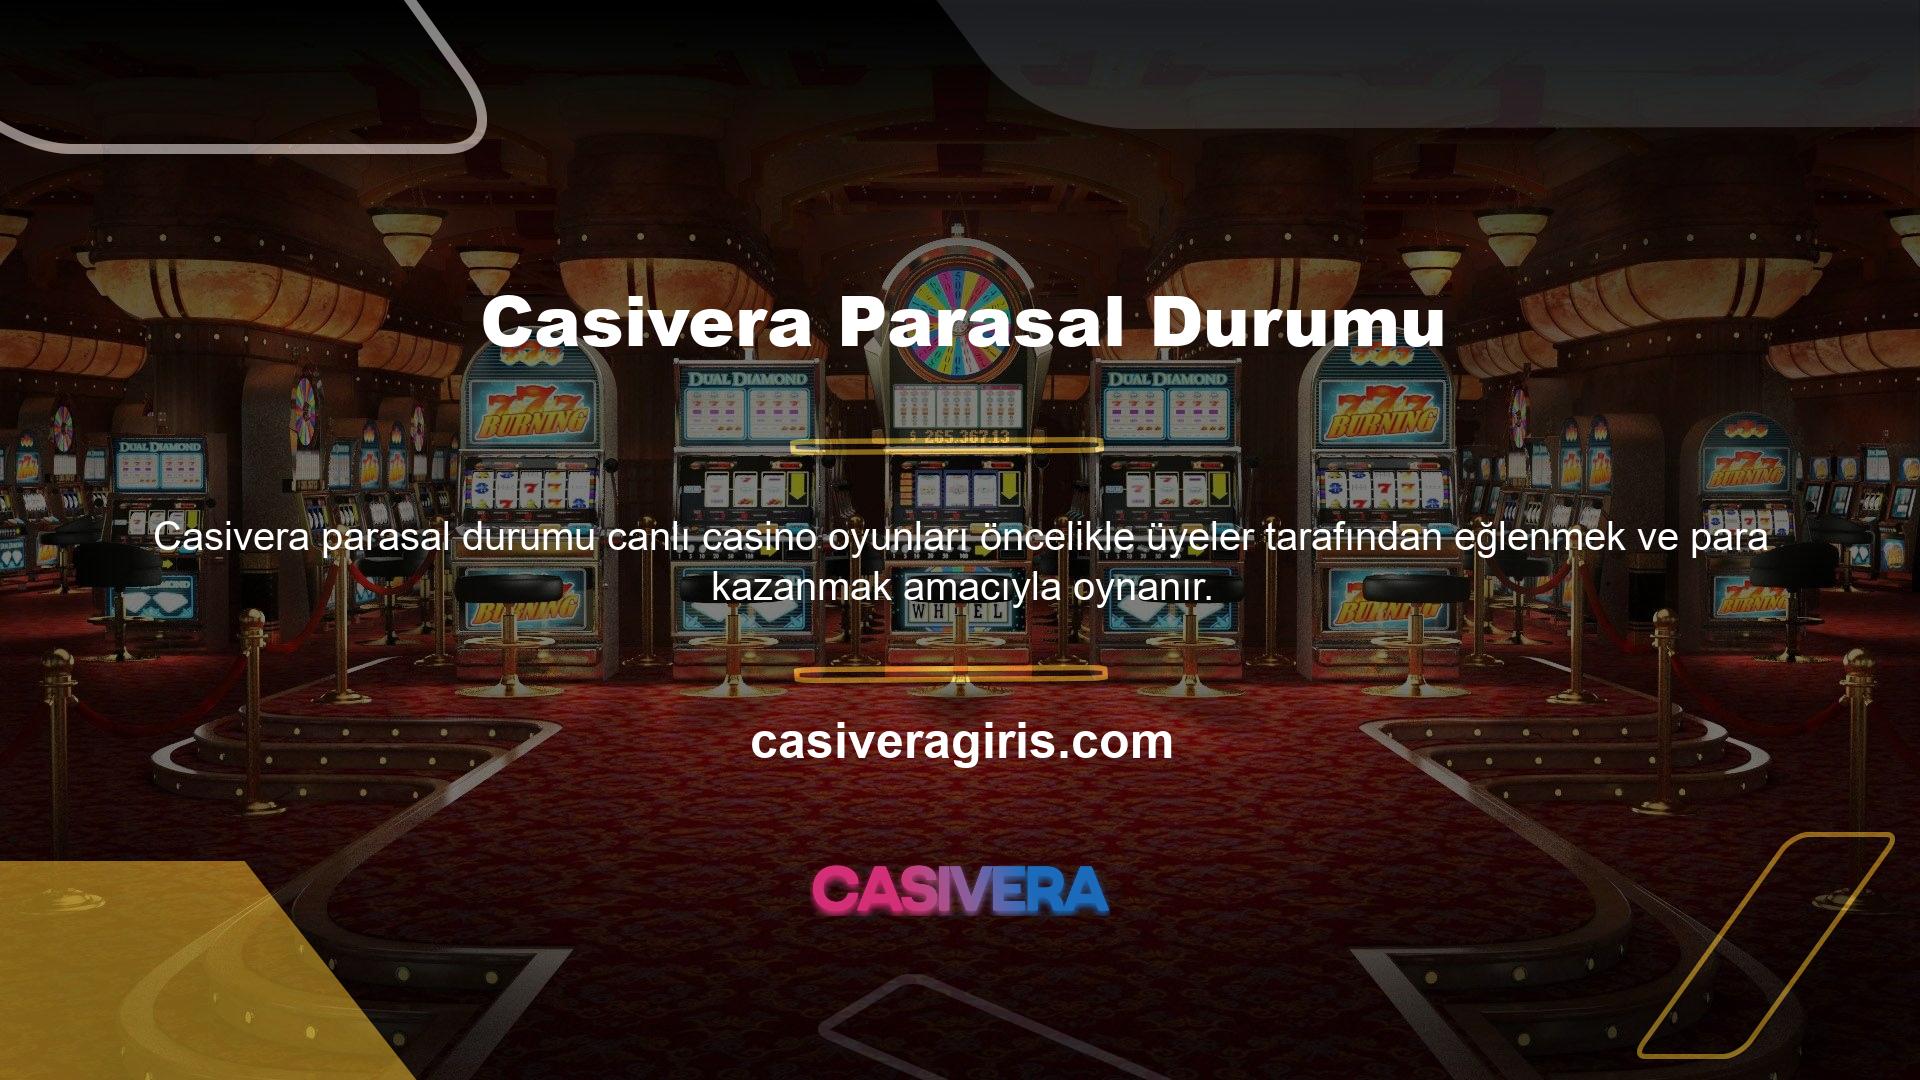 Casivera Canlı Casino'nun gelir profili incelendiğinde mükemmel sonuçların elde edildiği görülmektedir